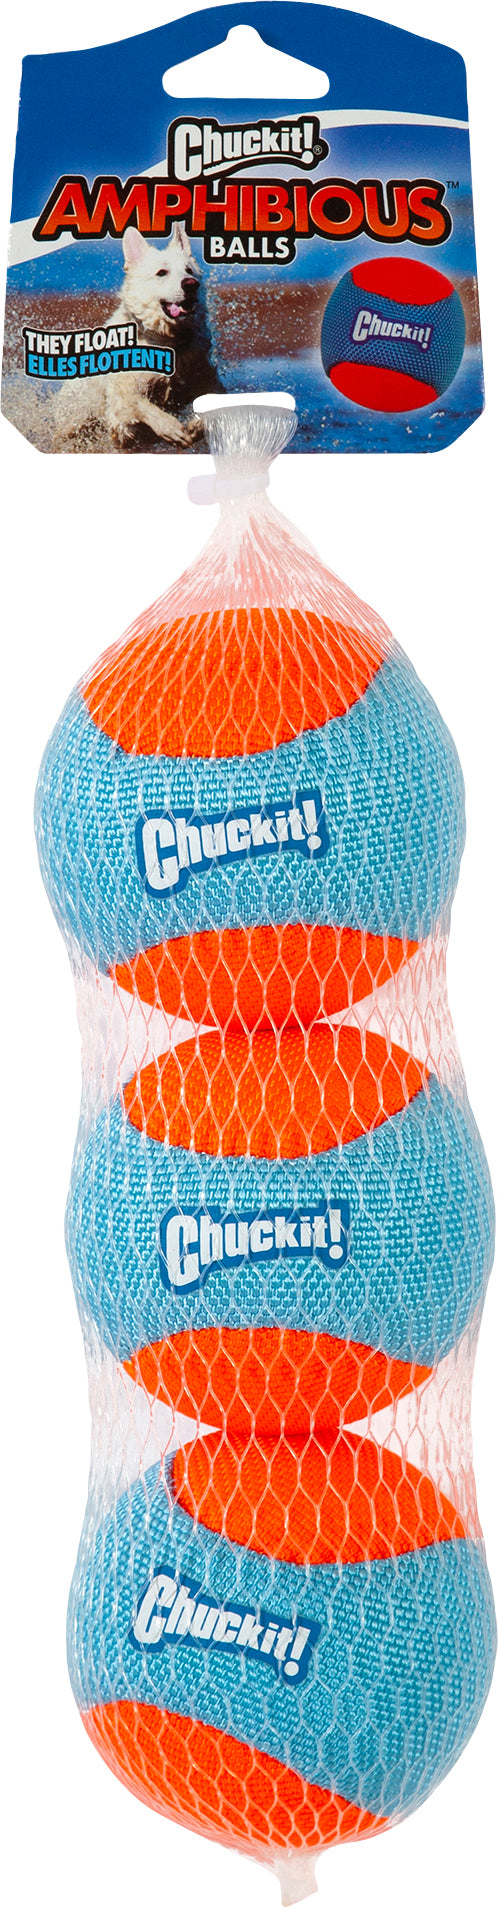 Chuckit Flytende tennisballer kommer i 3-pakk og er perfekte for hunder som er glade i kasteleker i vann og på land. Tennisballene har sterke farger for god synlighet og flyter i vann. Ballene er laget i et mykt materiale som er snill med hundens tenner. 3 baller i pakken.